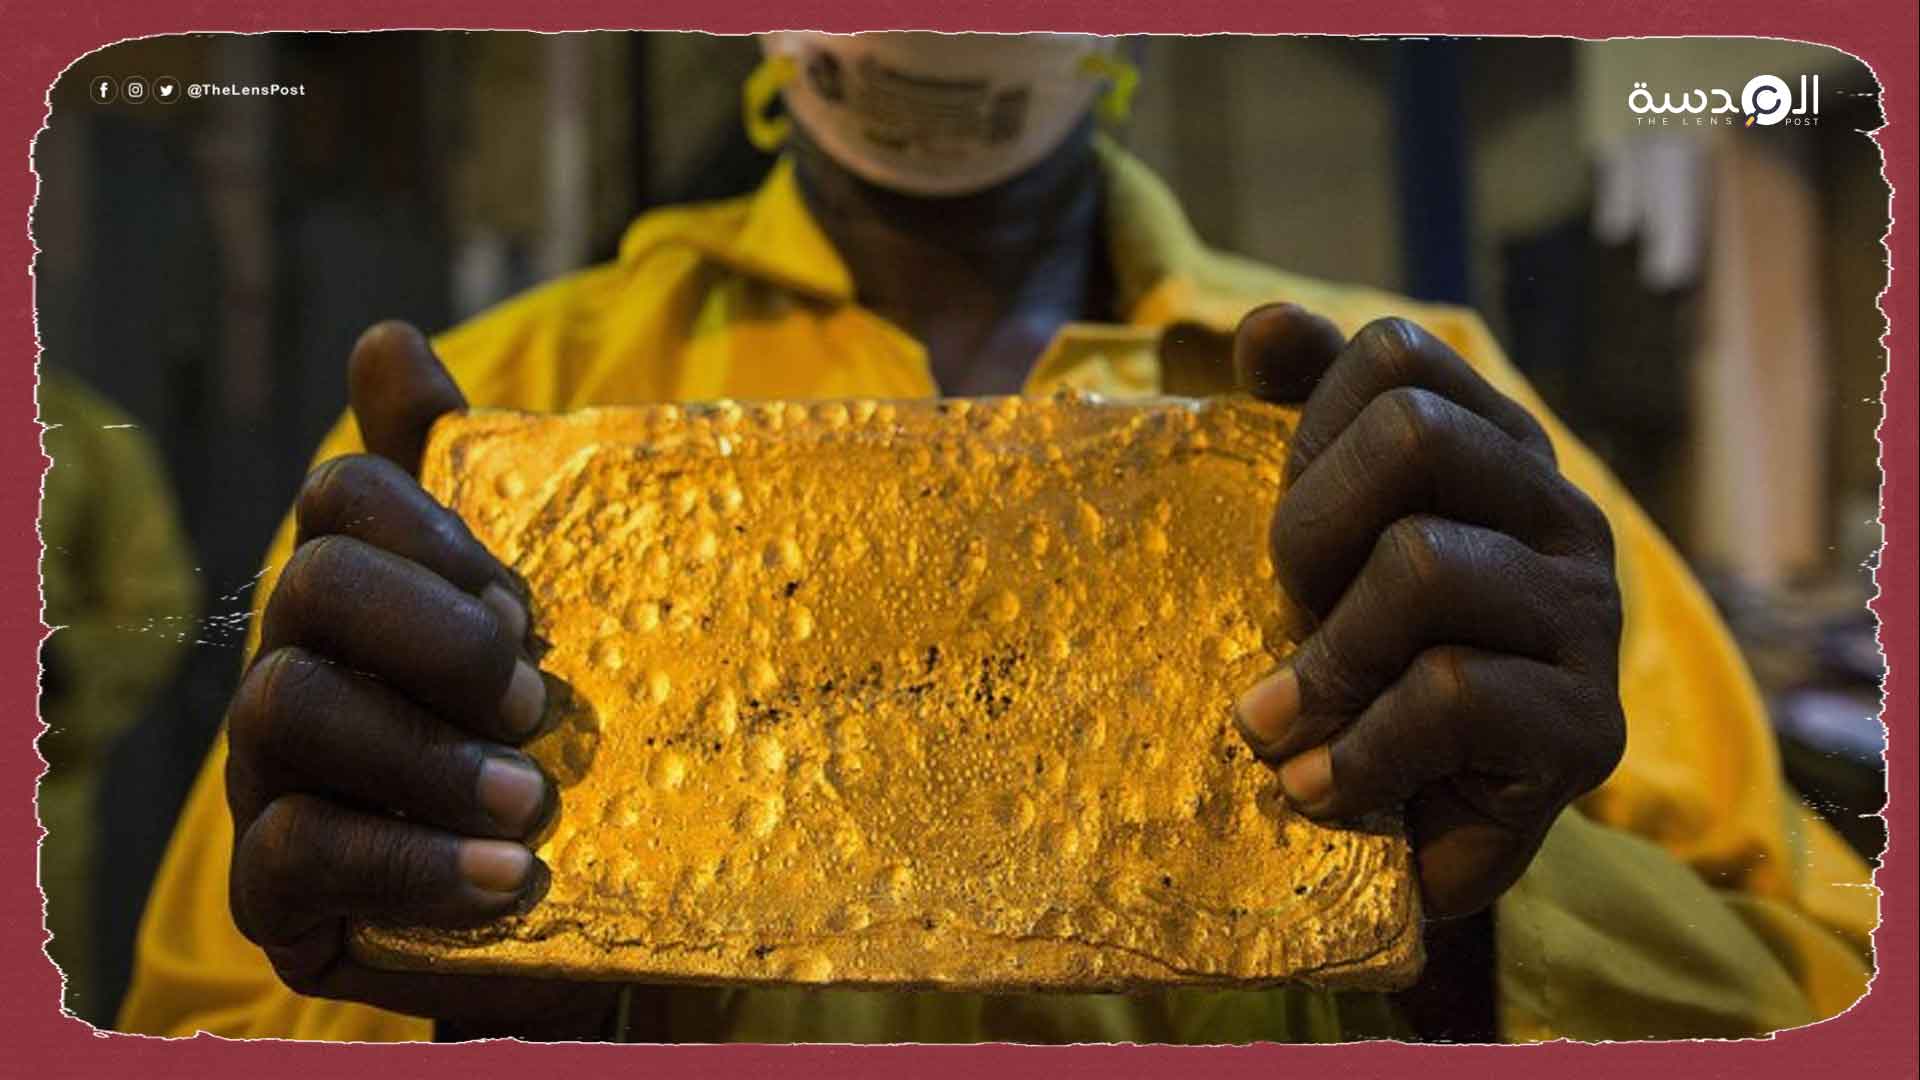 جراء الحرب المشتعلة.. انهيار تجارة الذهب في السودان